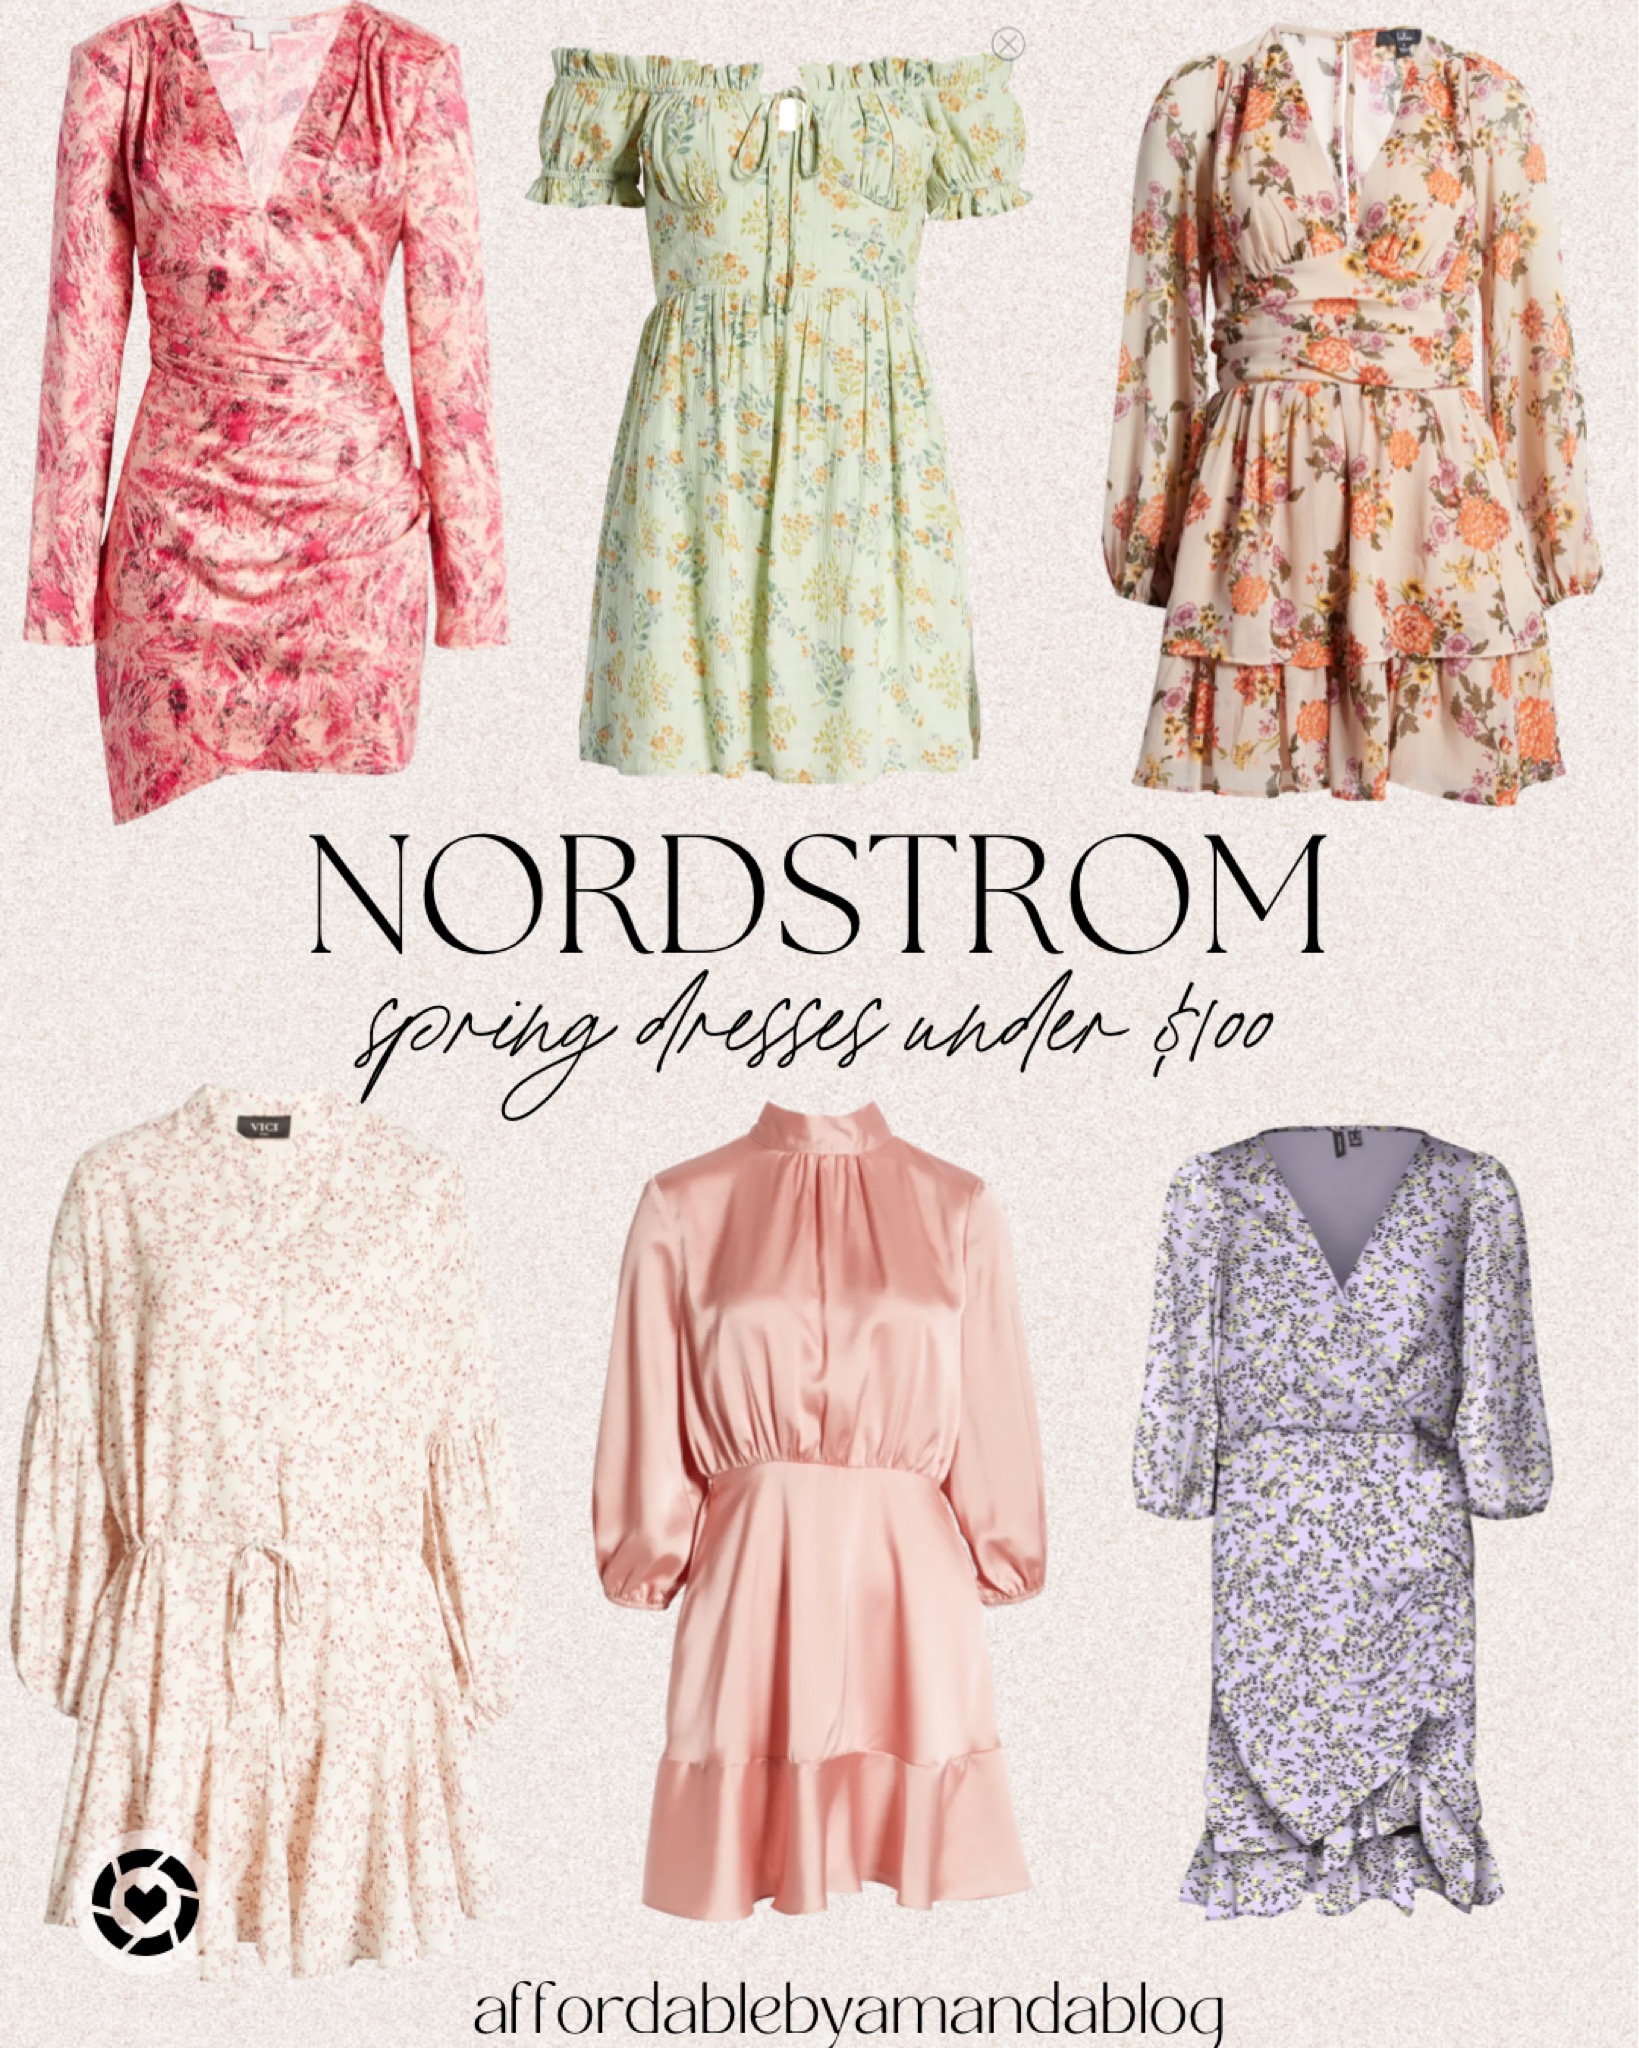 Nordstrom Spring Dresses Under $100 - Affordable by Amanda